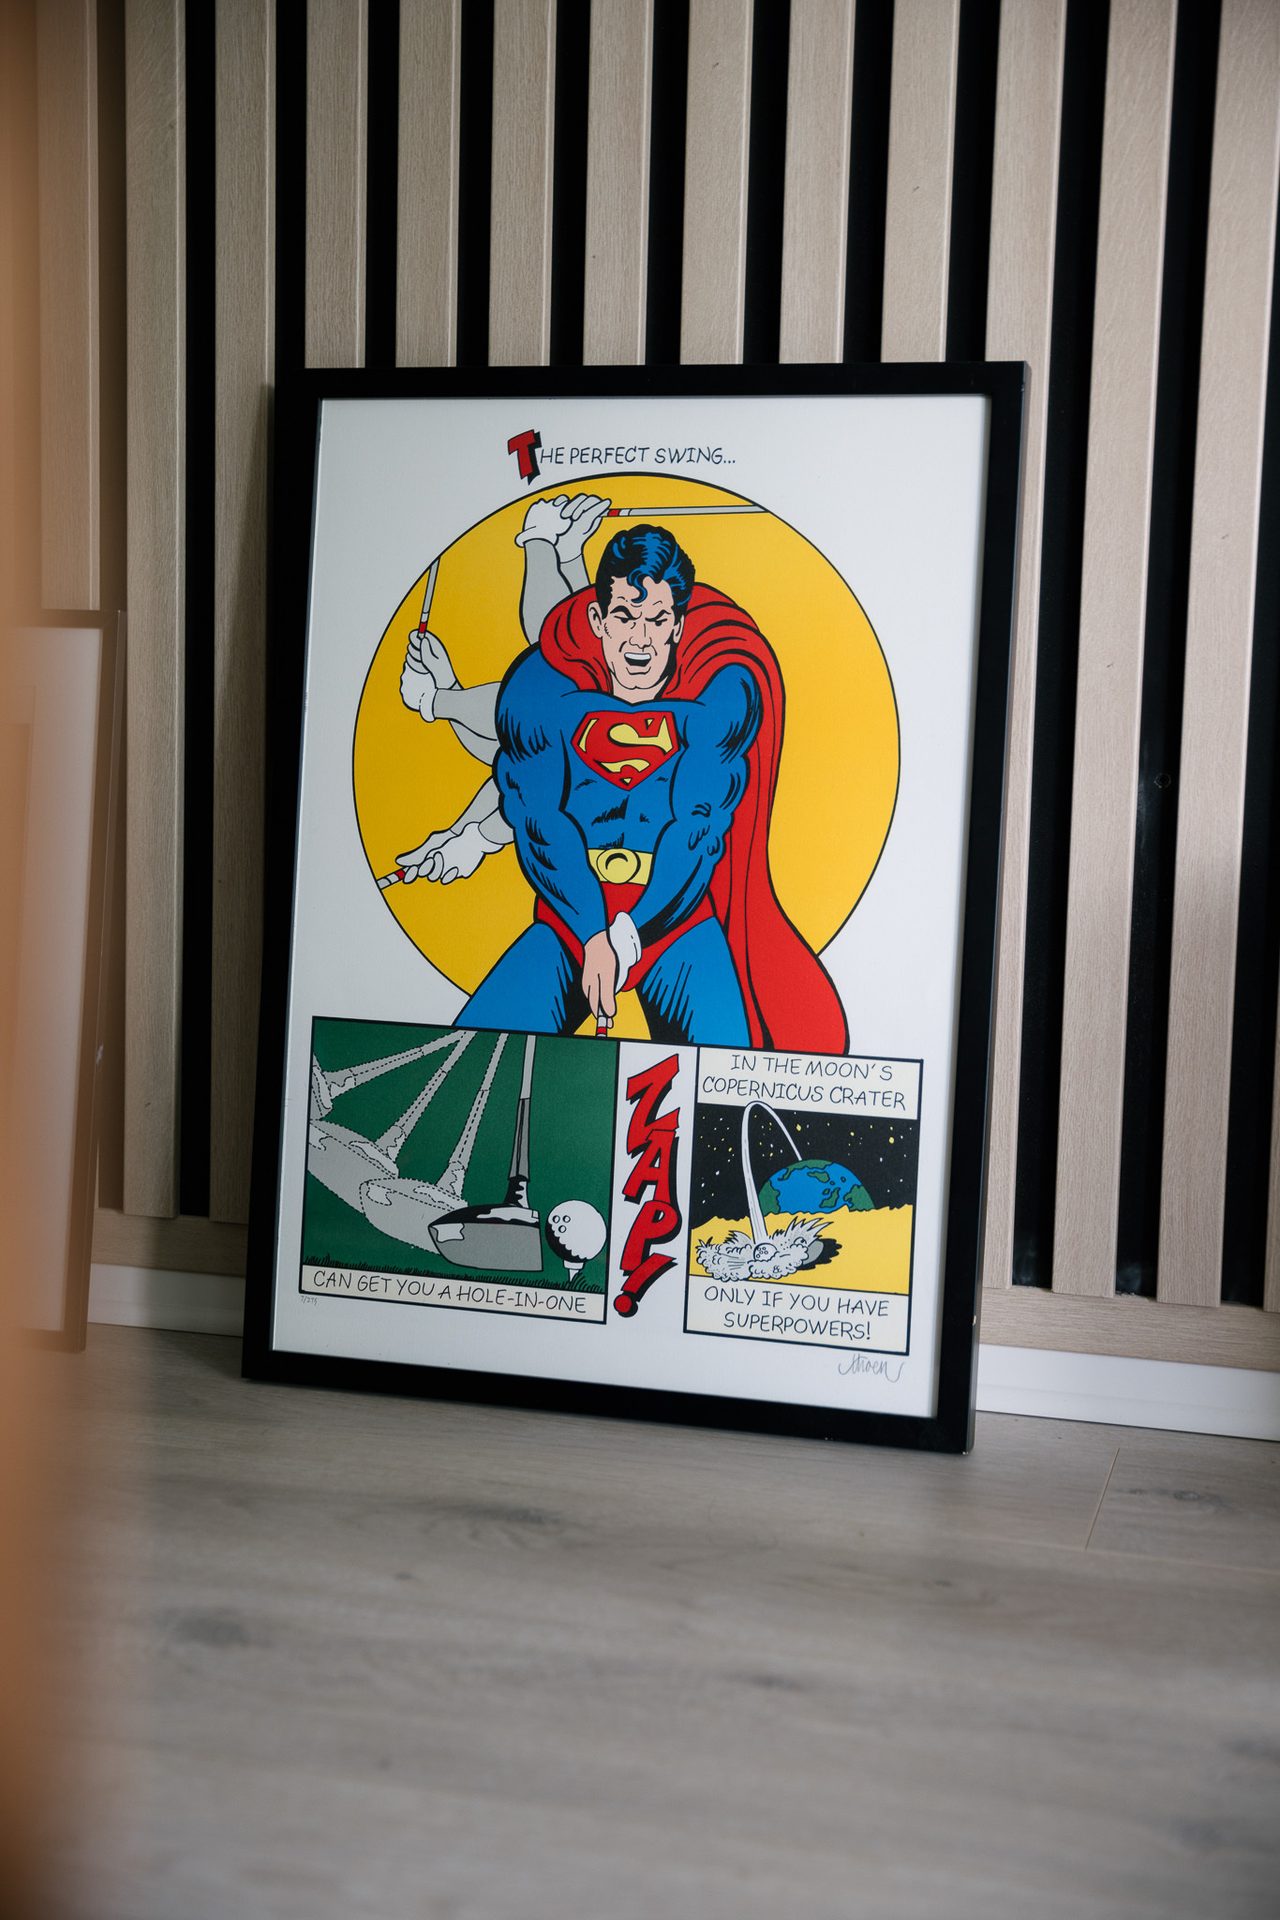 et bilde som viser Superman som skal svinge en golfk&#xF8;lle i et design som ligner en tegneserie.